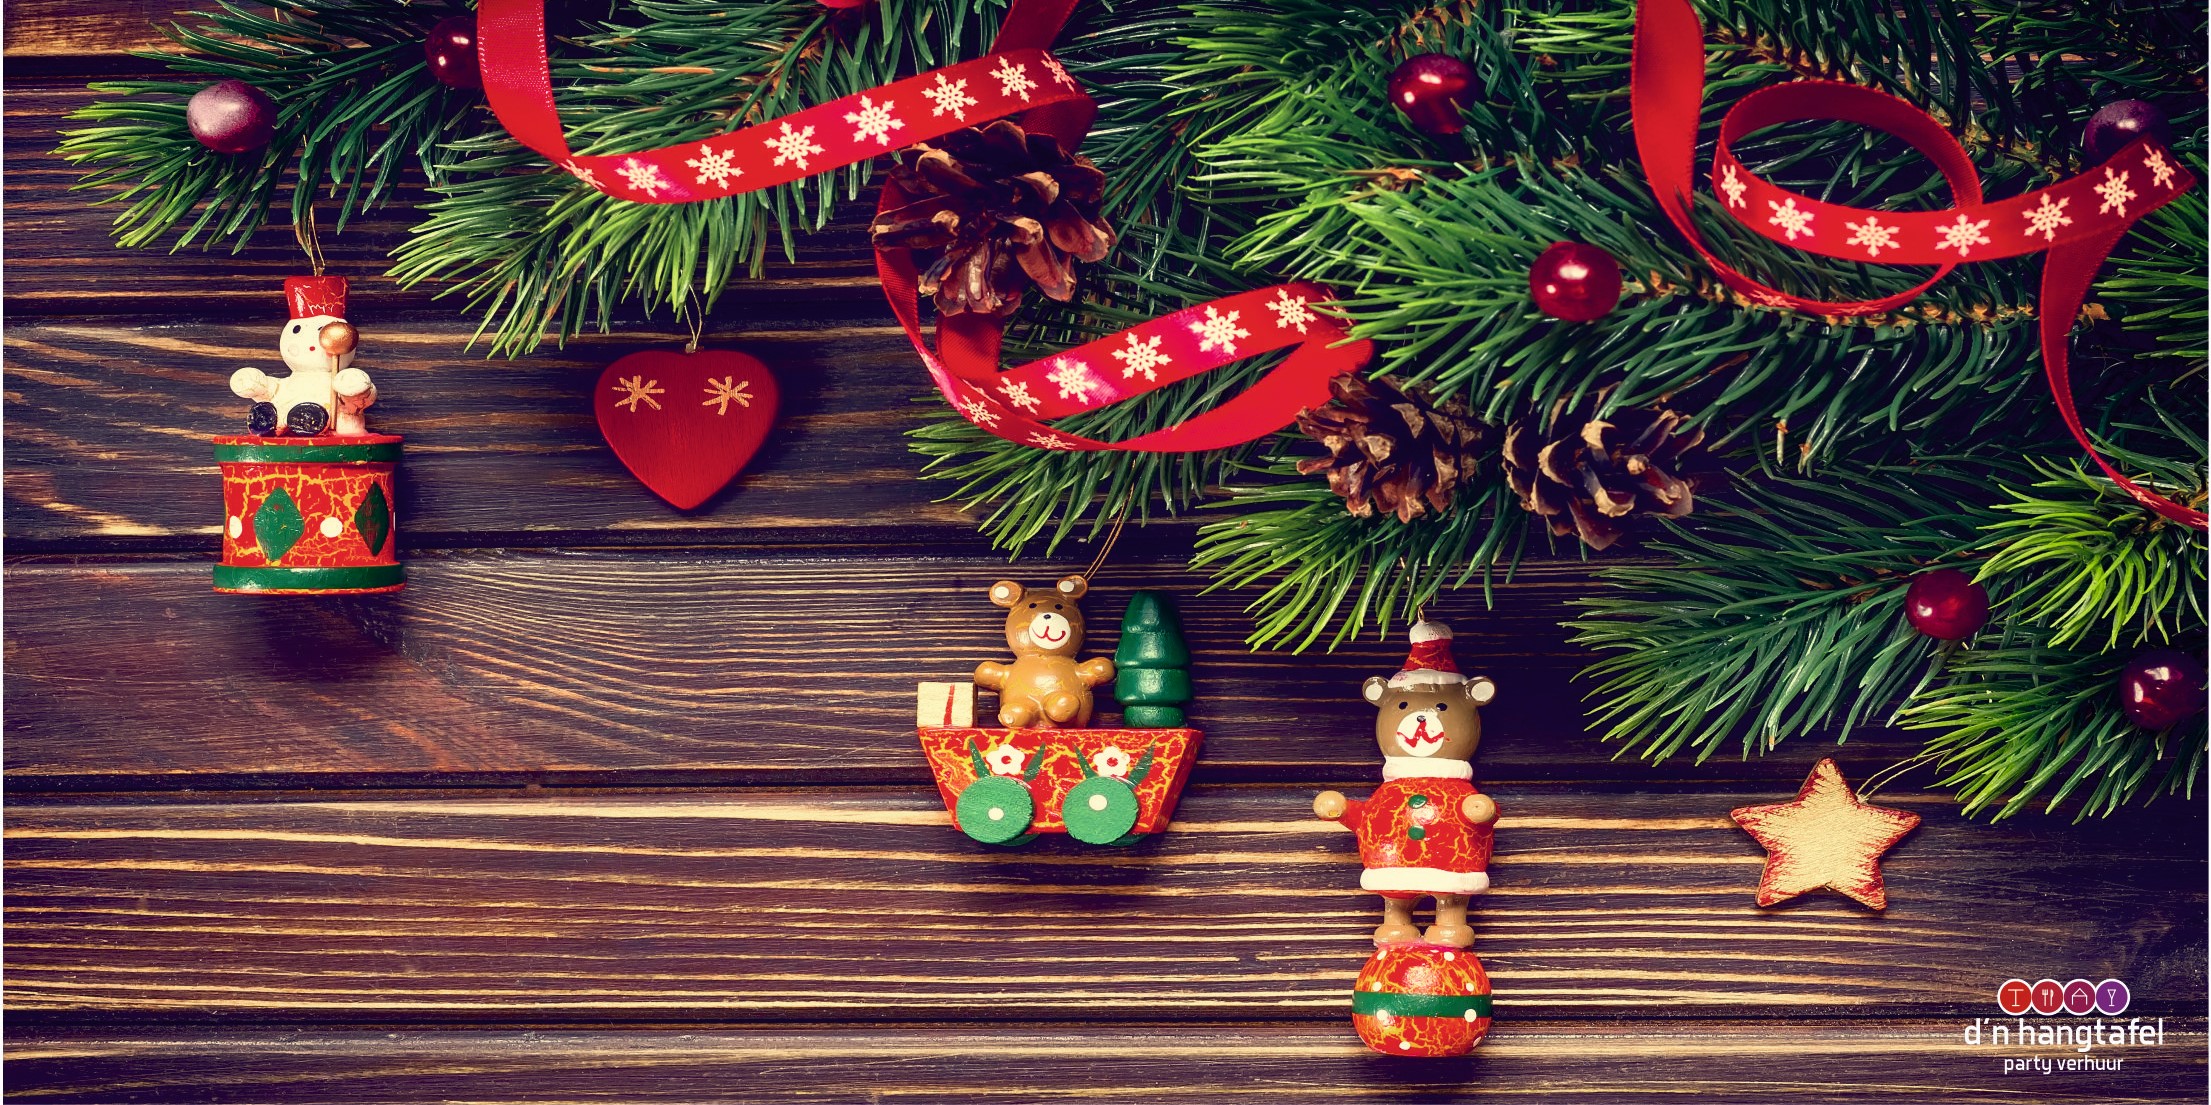 Horizontaal Verstrikking Getuigen Bouwhek met kerst thema doek (kerstboom met diertjes) - Partyverhuur d'n  Hangtafel